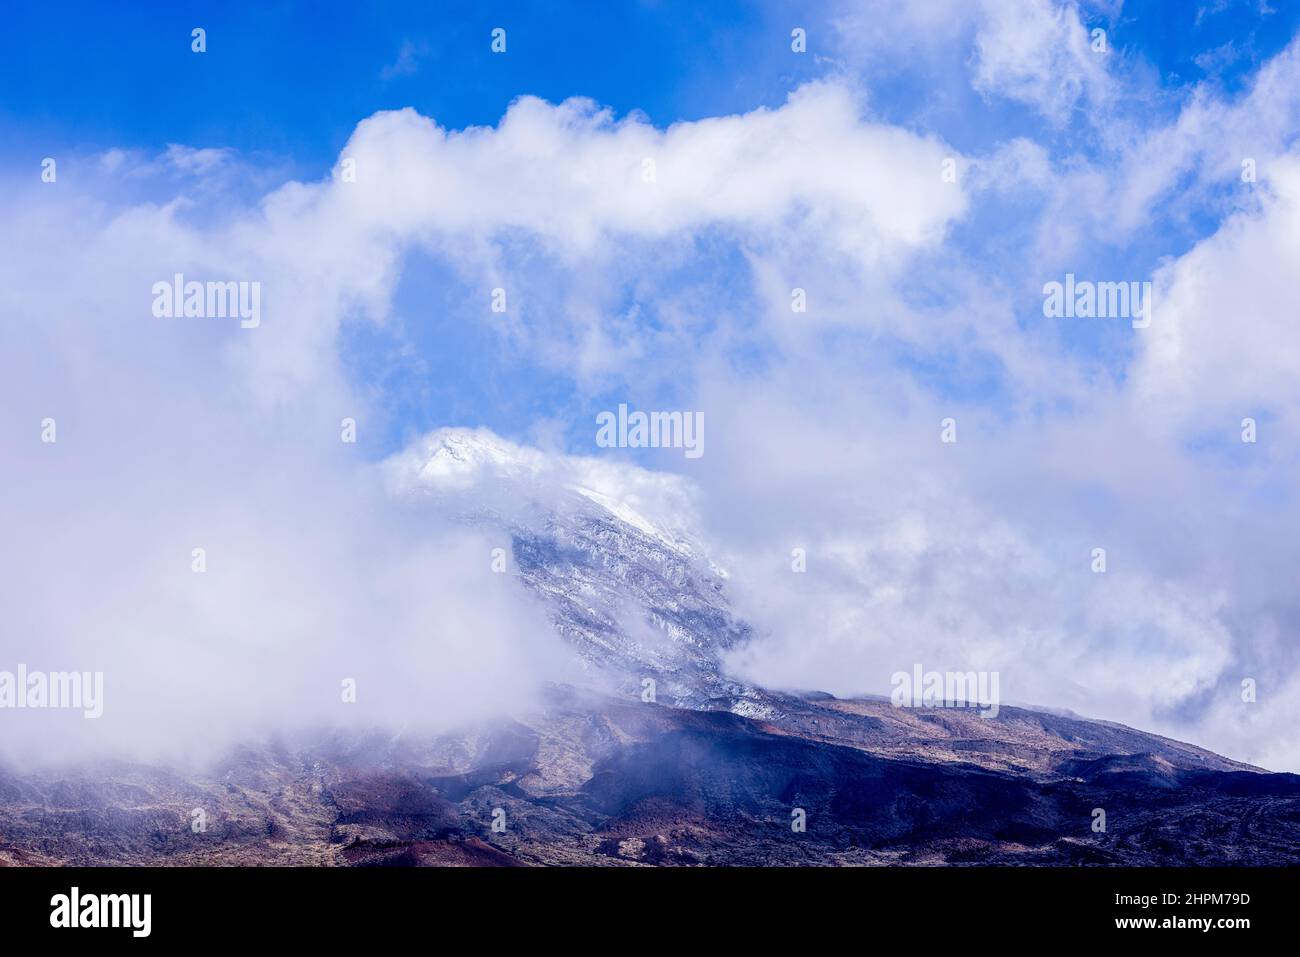 Schneebedeckte Hänge des Teide sind teilweise durch Wolken im Nationalpark Las Canadas del Teide verdeckt, Teneriffa, Kanarische Inseln, Spanien Stockfoto